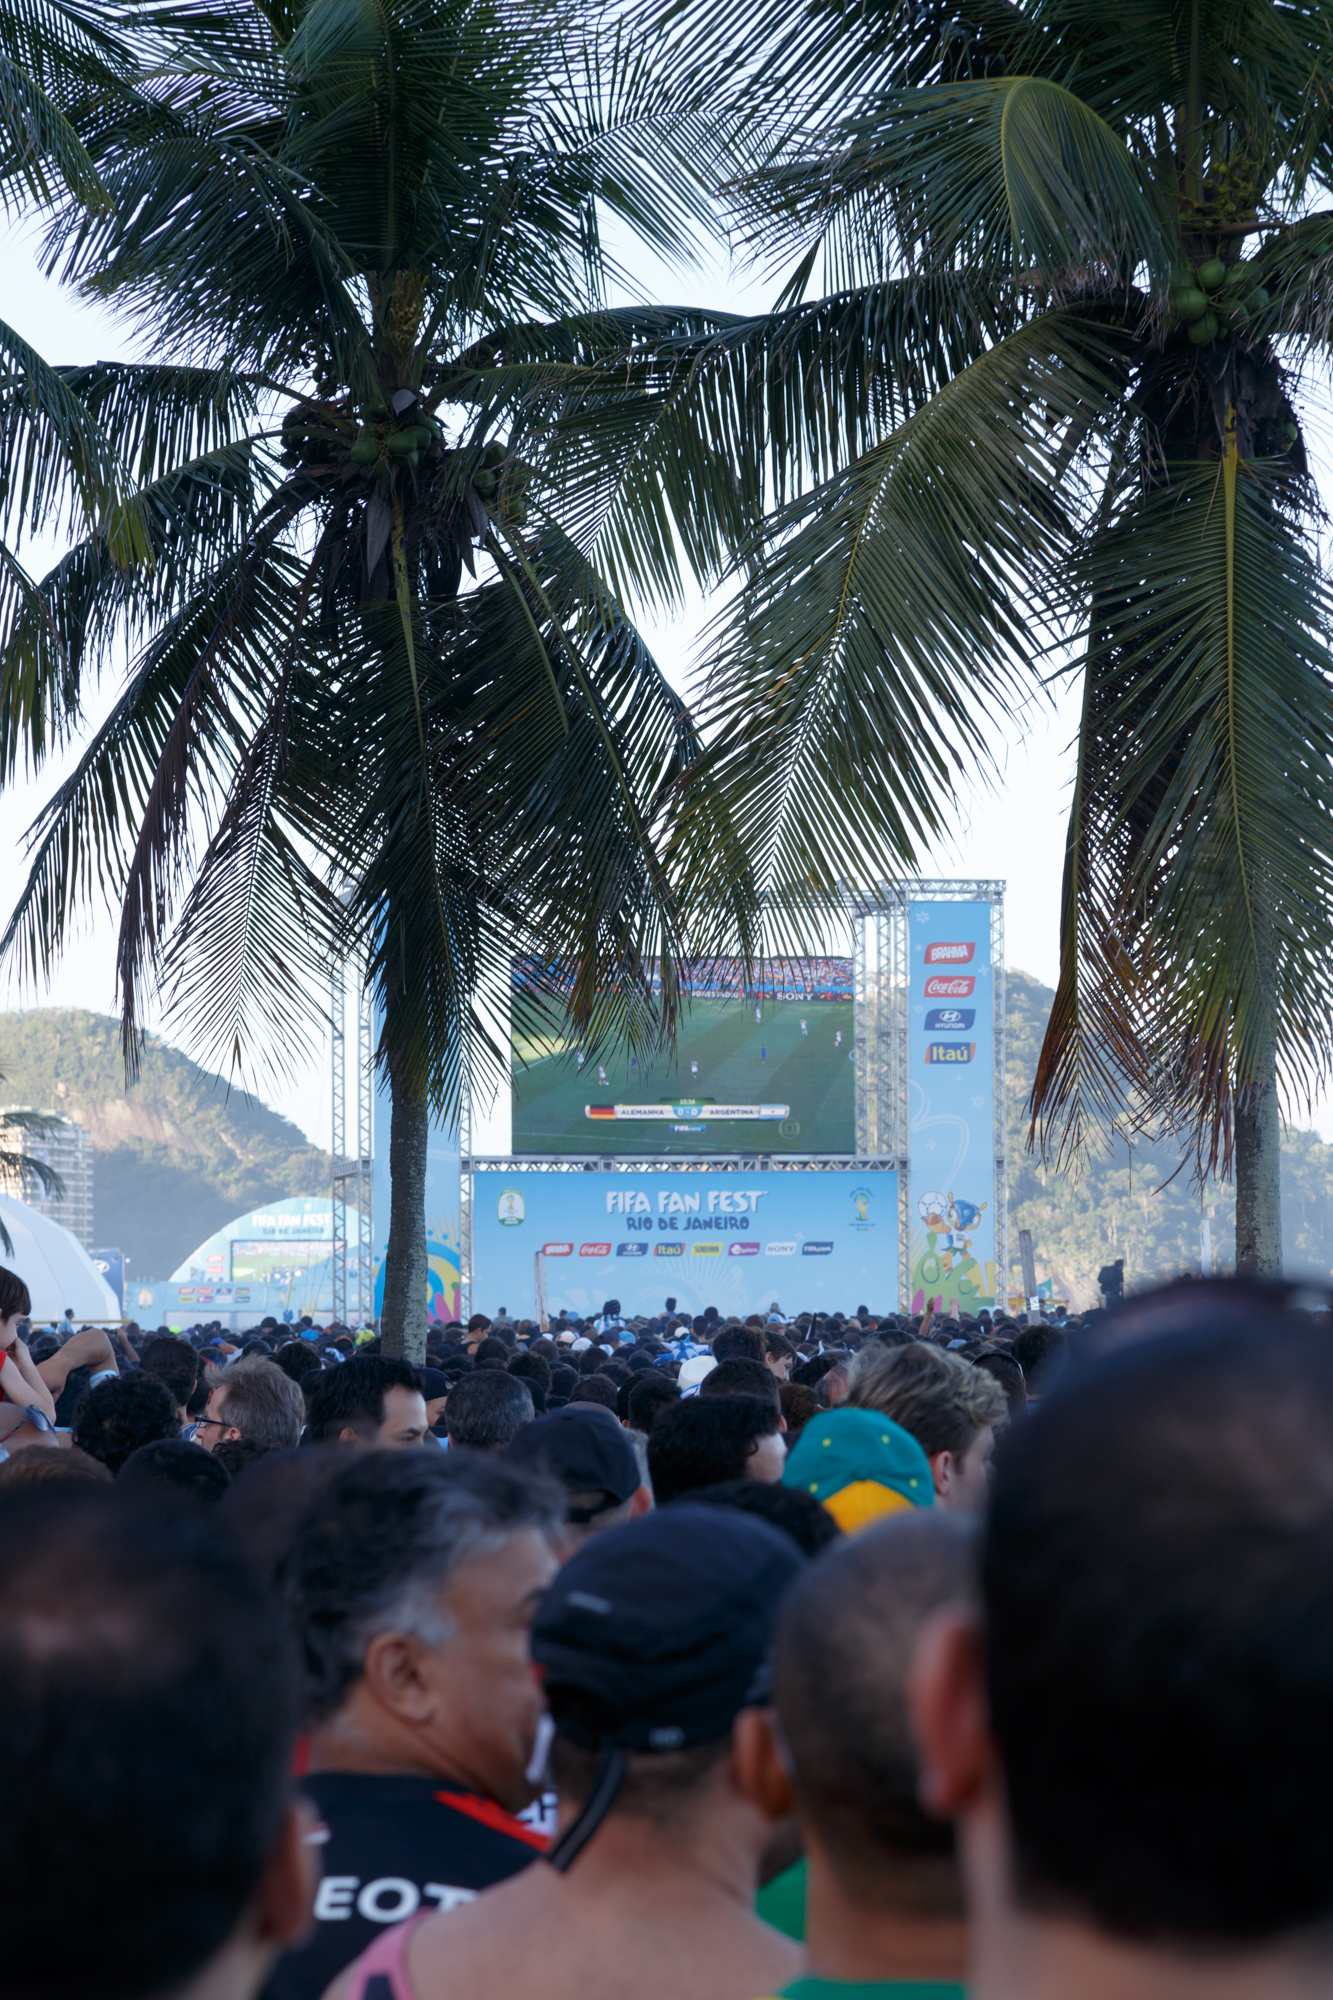 FIFA Fan Fest, Copacabana Beach, 2014 World Cup Final, Rio de Janeiro, Brazil